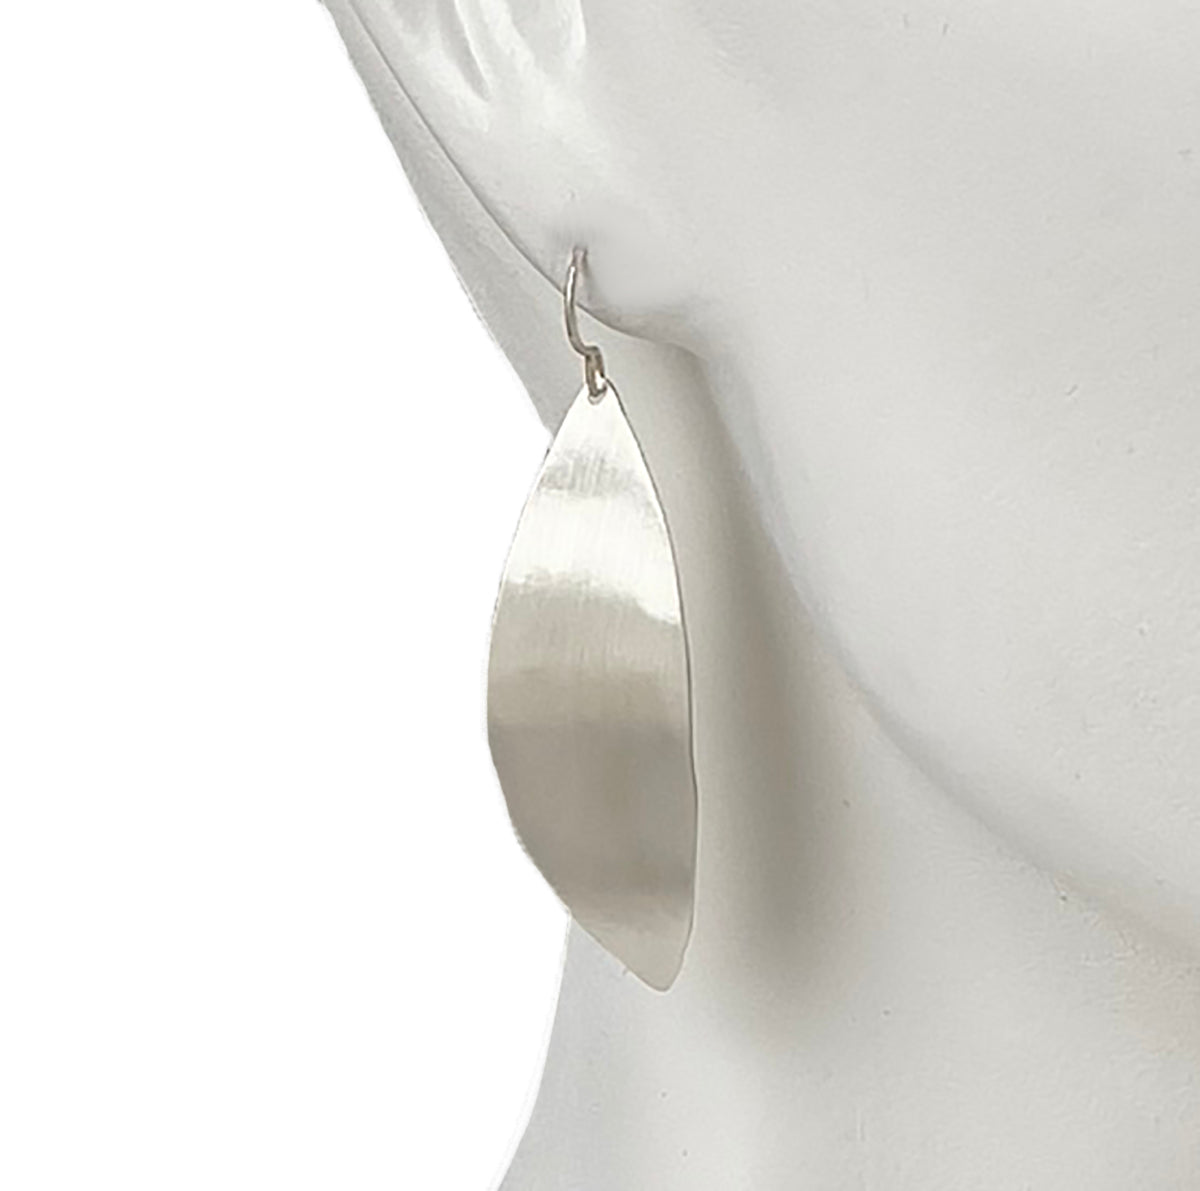 Jennifer Long Earrings - Sterling Silver